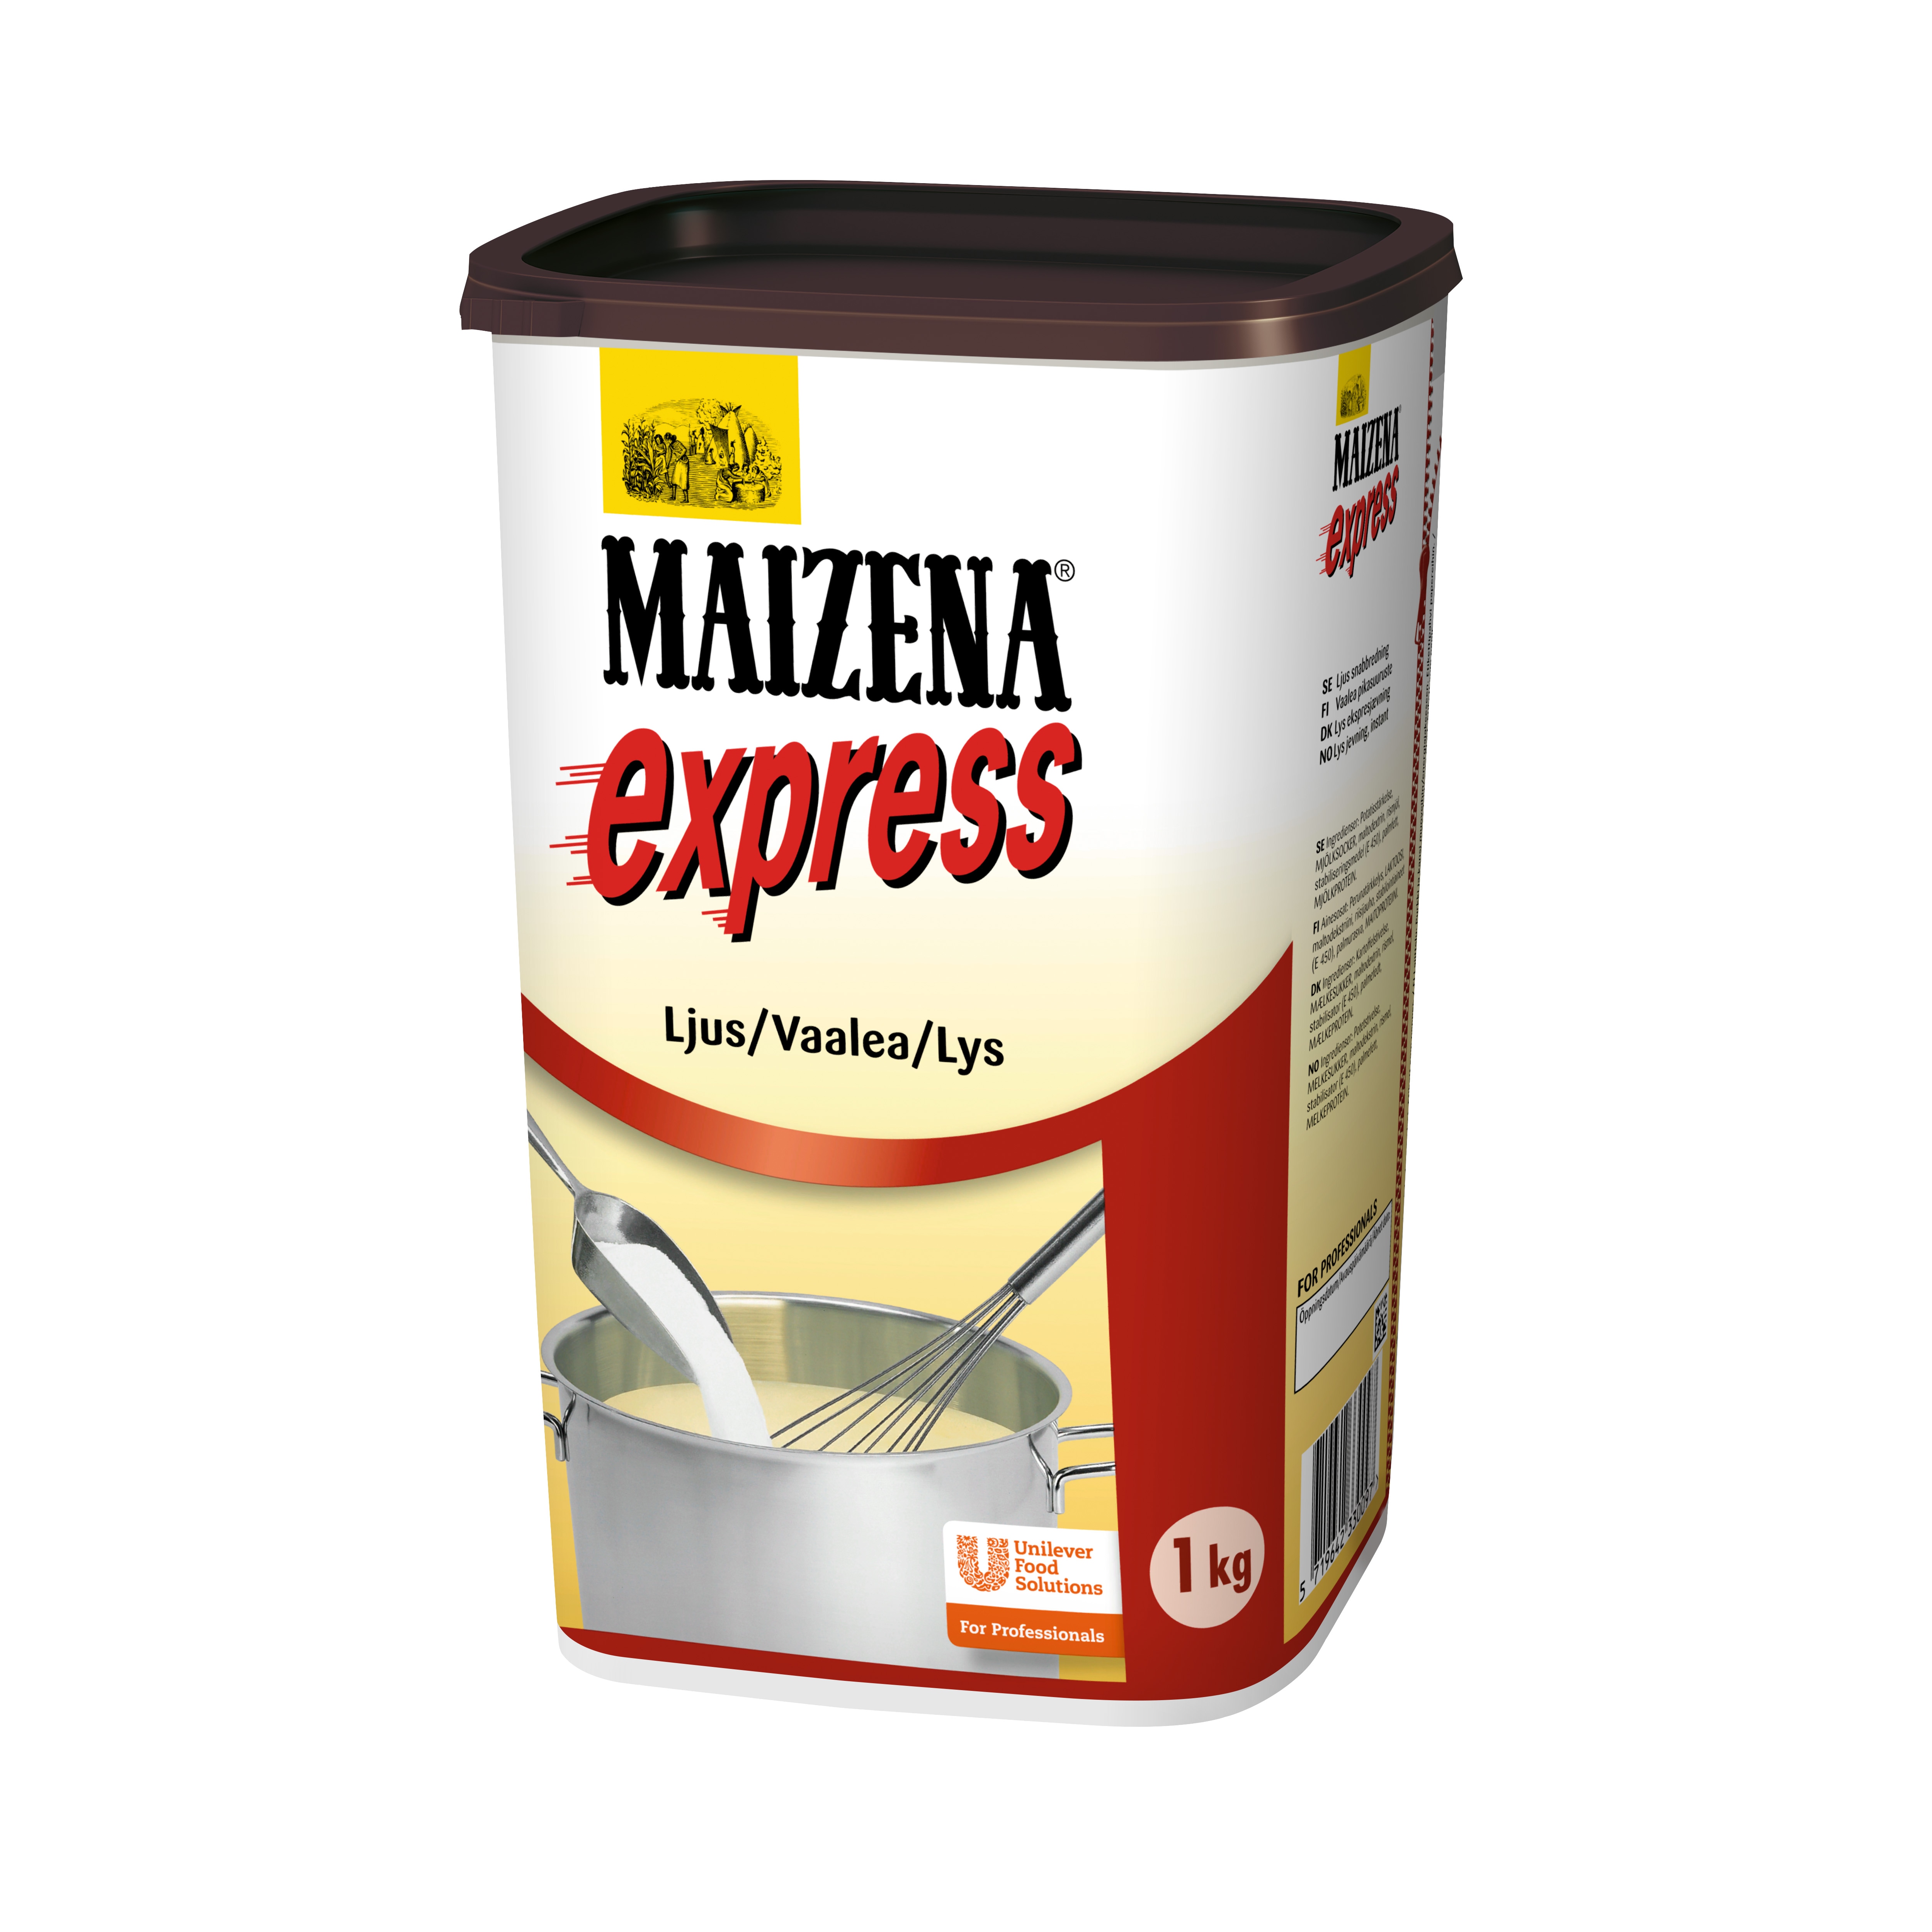 MAIZENA Express, ljus snabbredning 6 x 1 kg - 